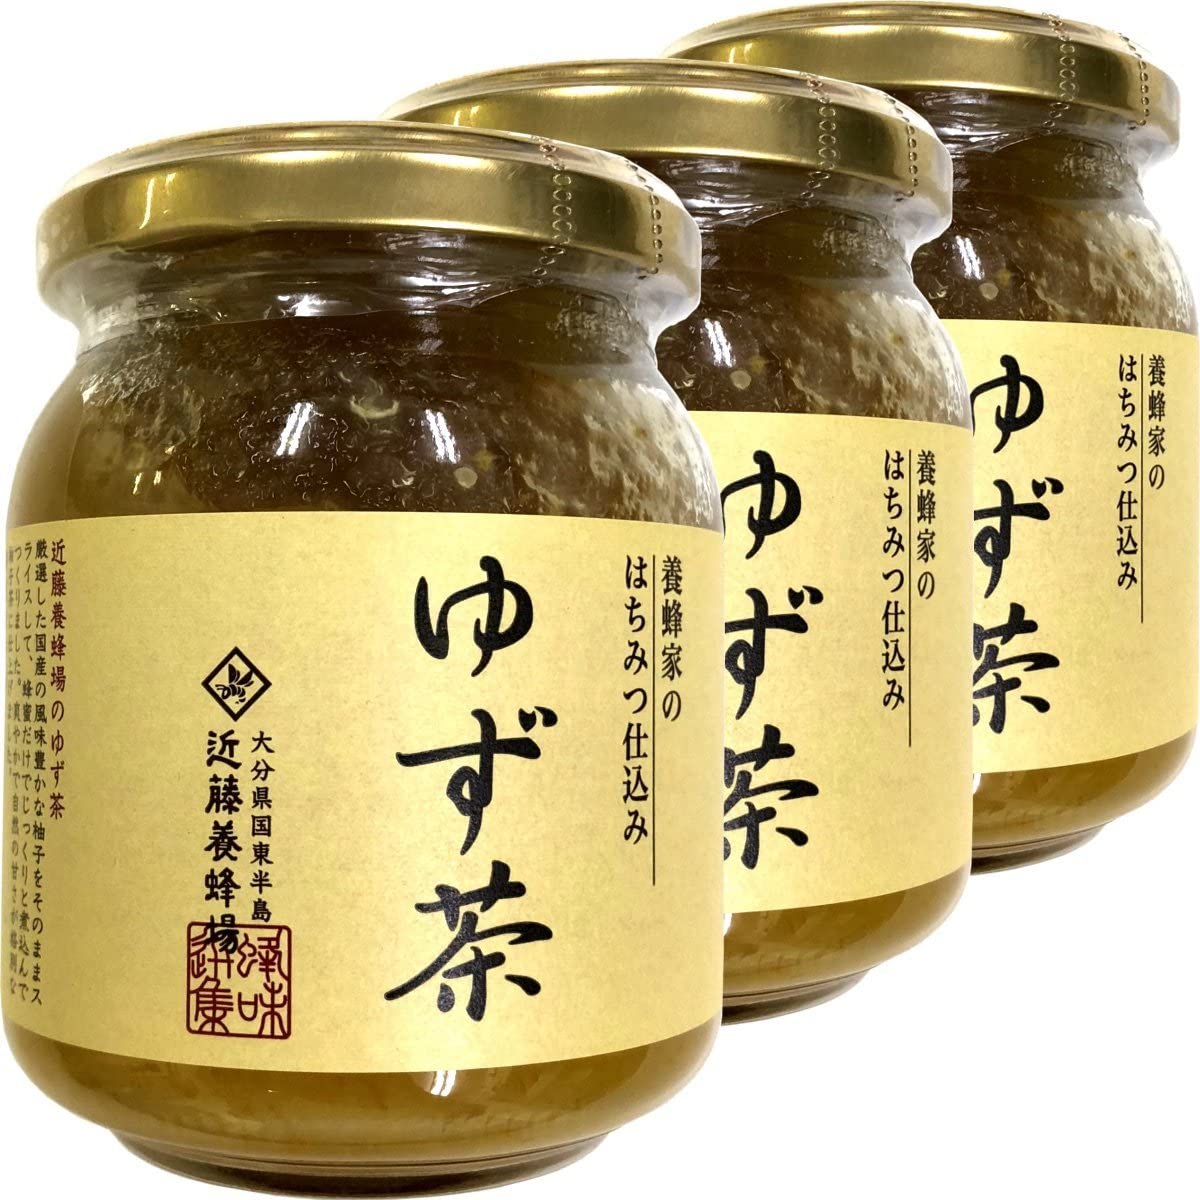 ゆず茶 250g 養蜂家のはちみつ仕込み 国産柚子 巣鴨のお茶屋さん 山年園 【3個セット】